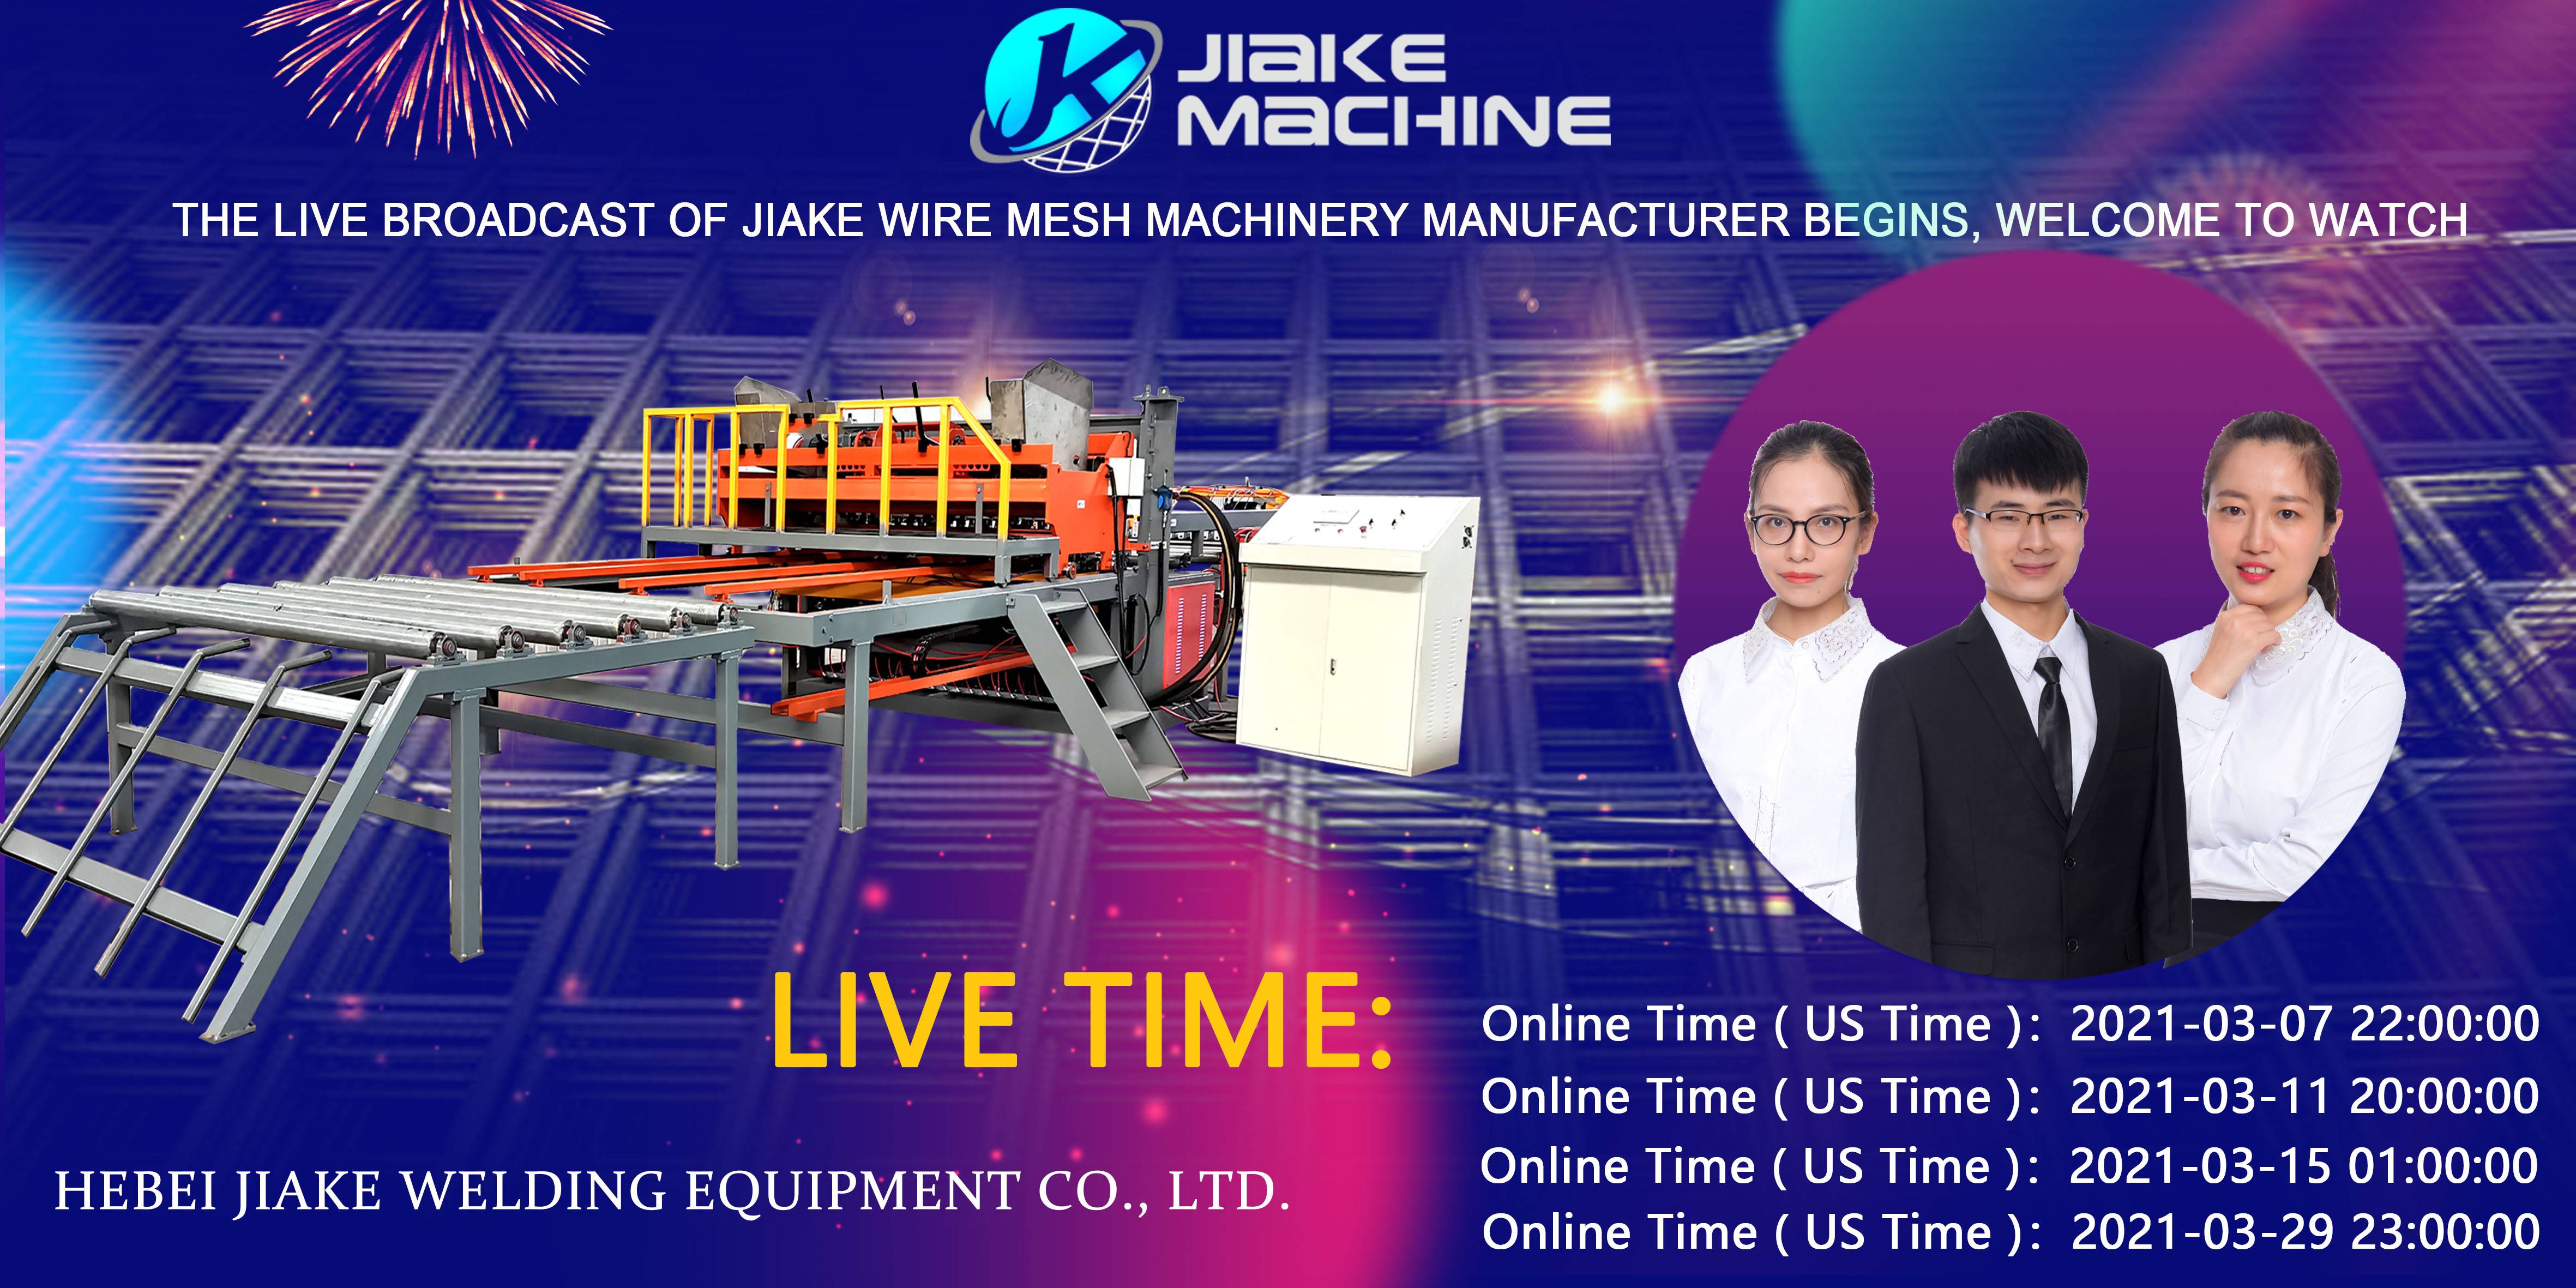 Die regstreekse uitsending van Jiake Wire Mesh Machinery kom in Maart, welkom om te kyk